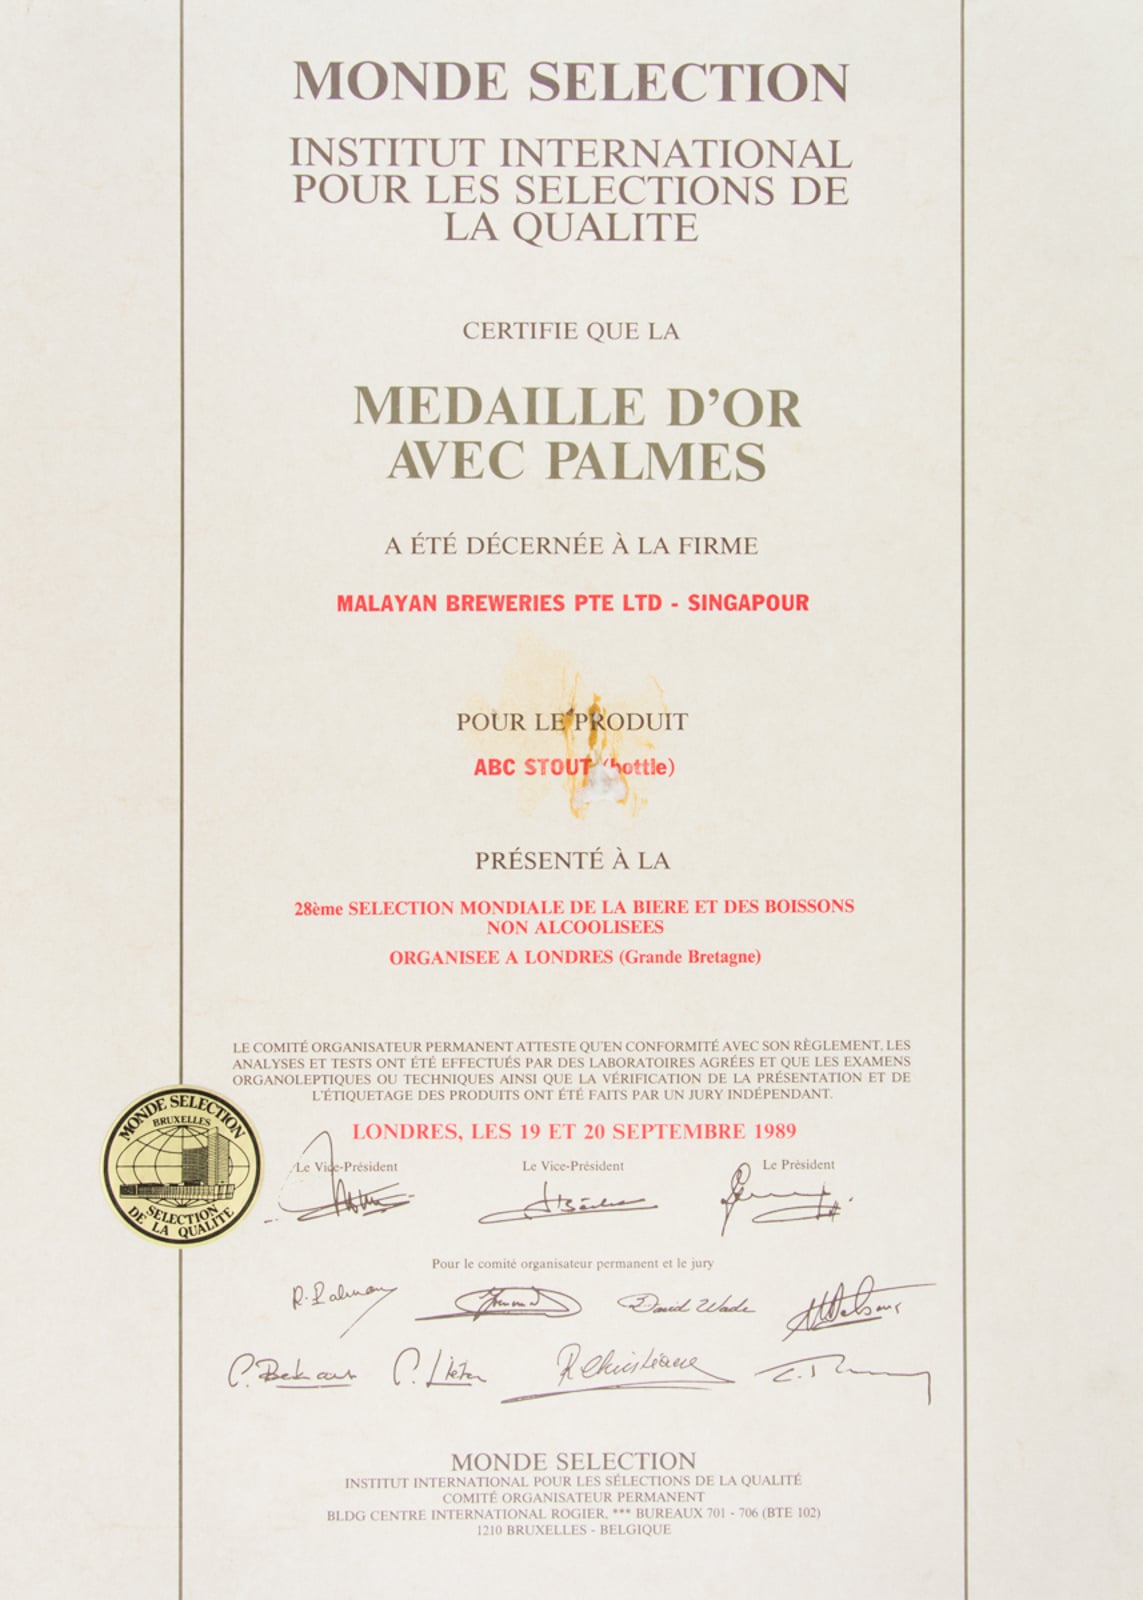 ABC Stout (Bottle) - Médaille d'Or avec Palmes, Monde Sélection Certificate 1989